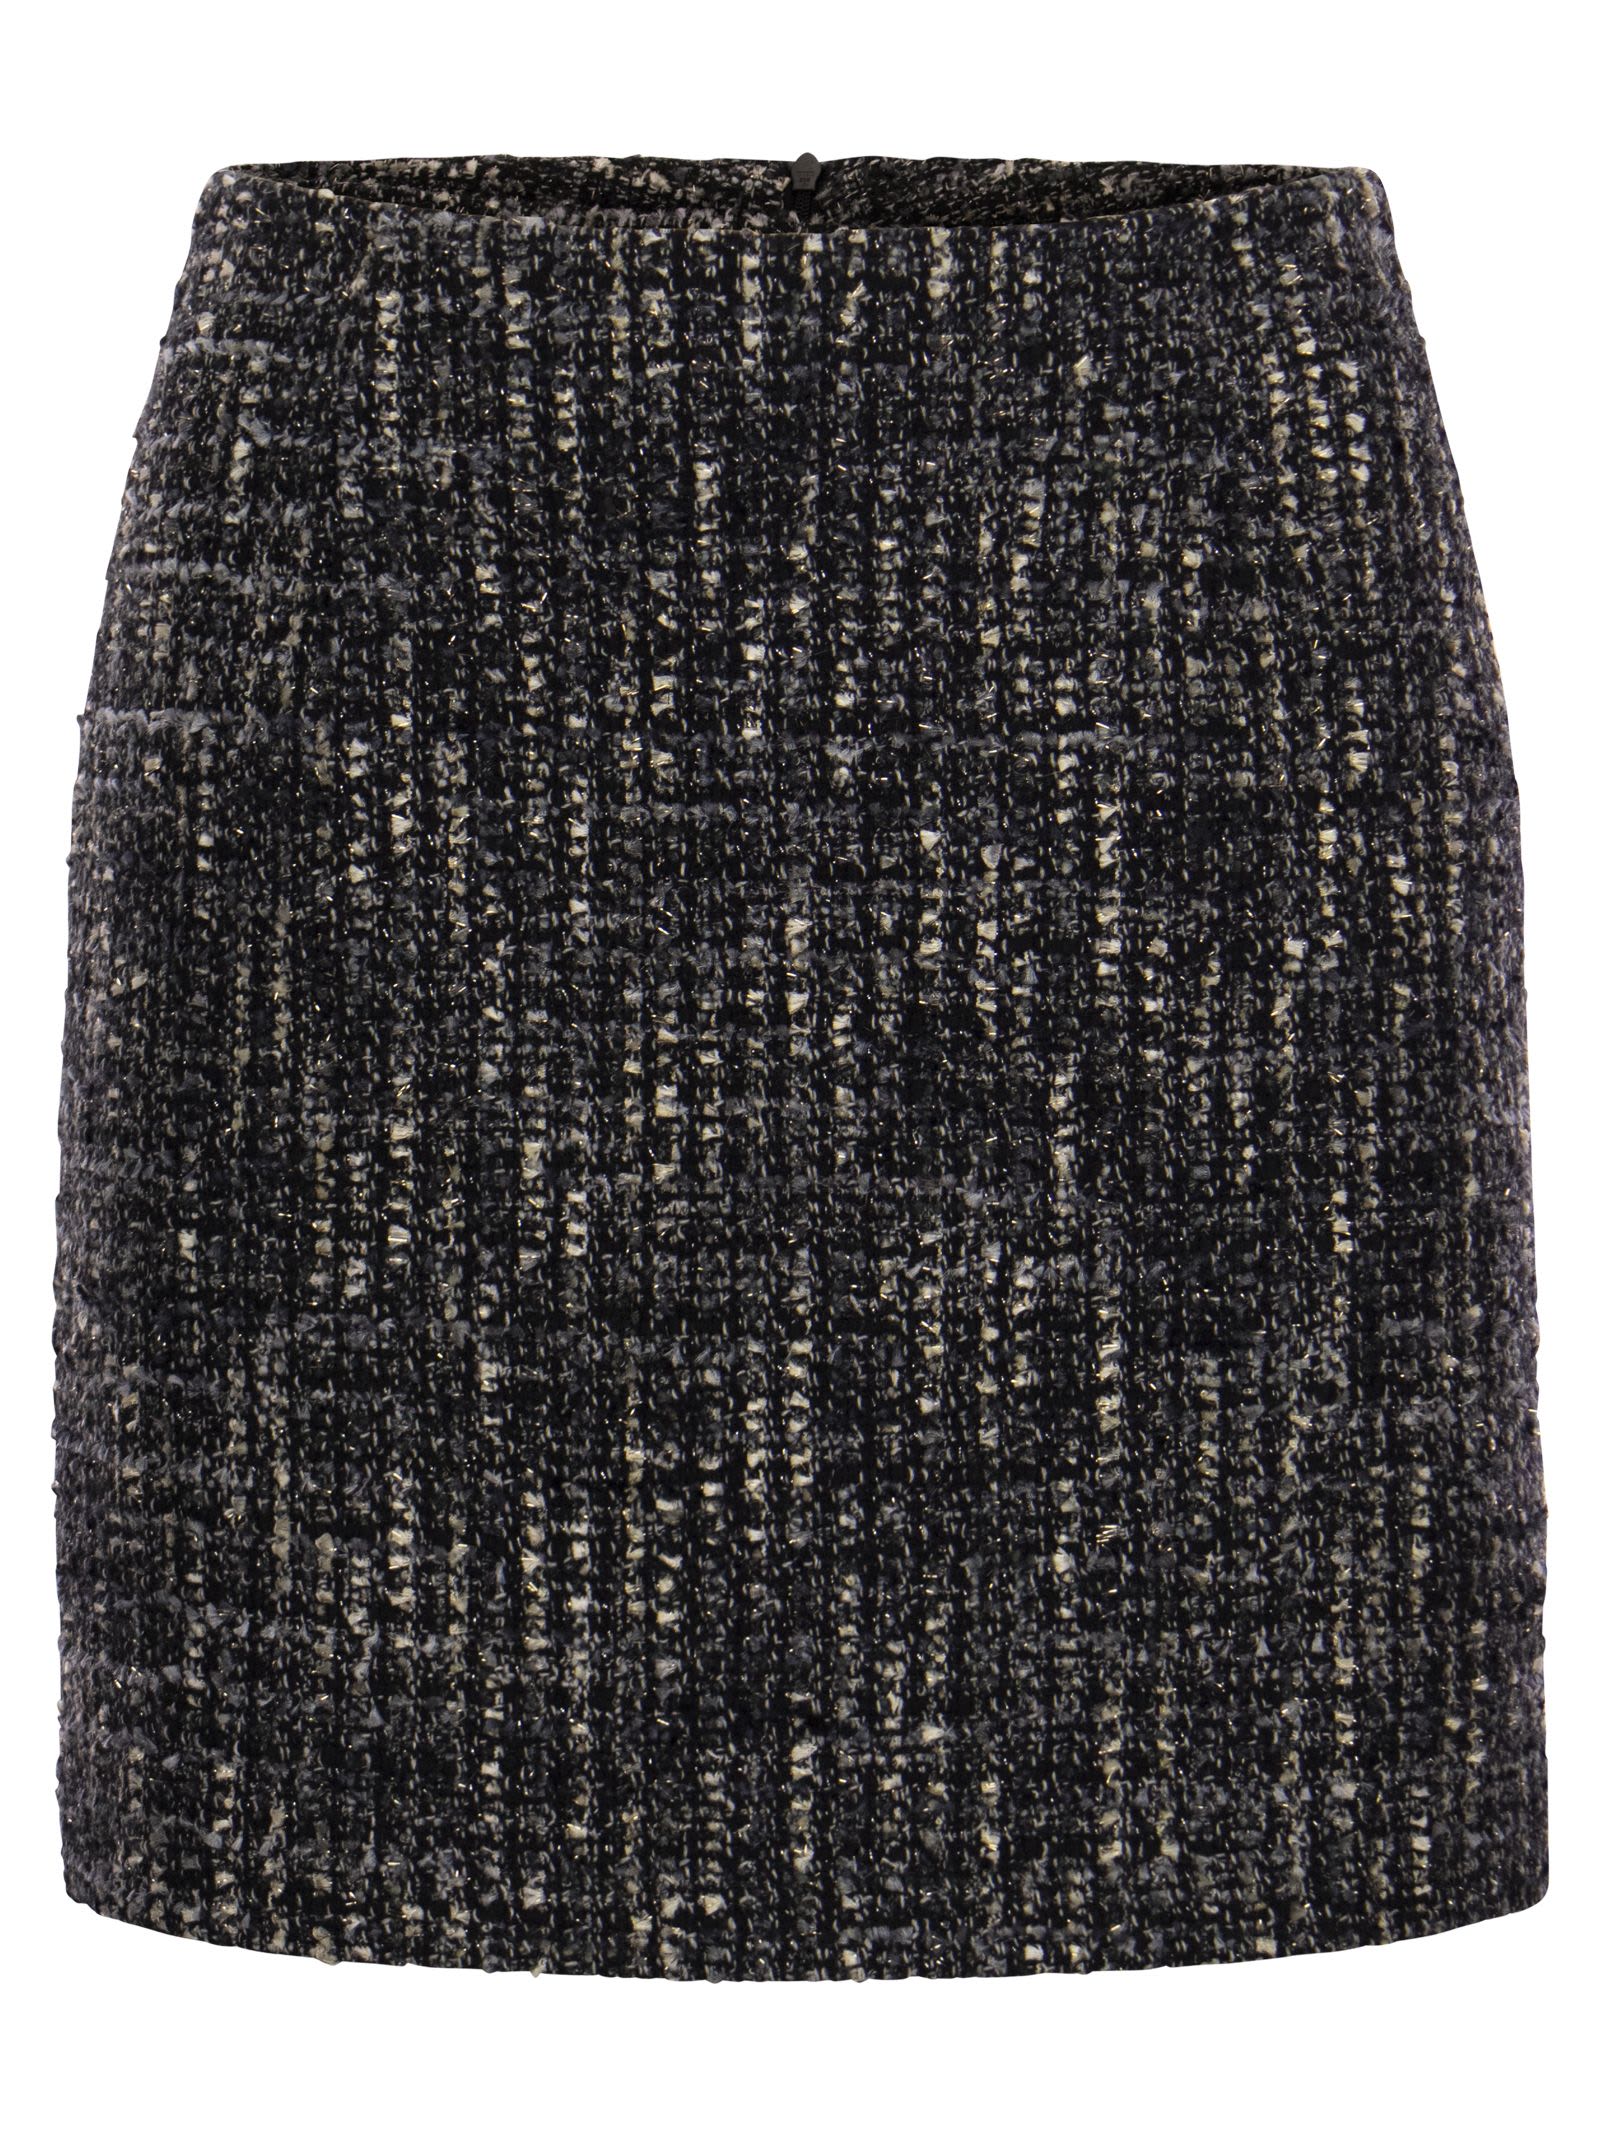 May - Tweed Miniskirt